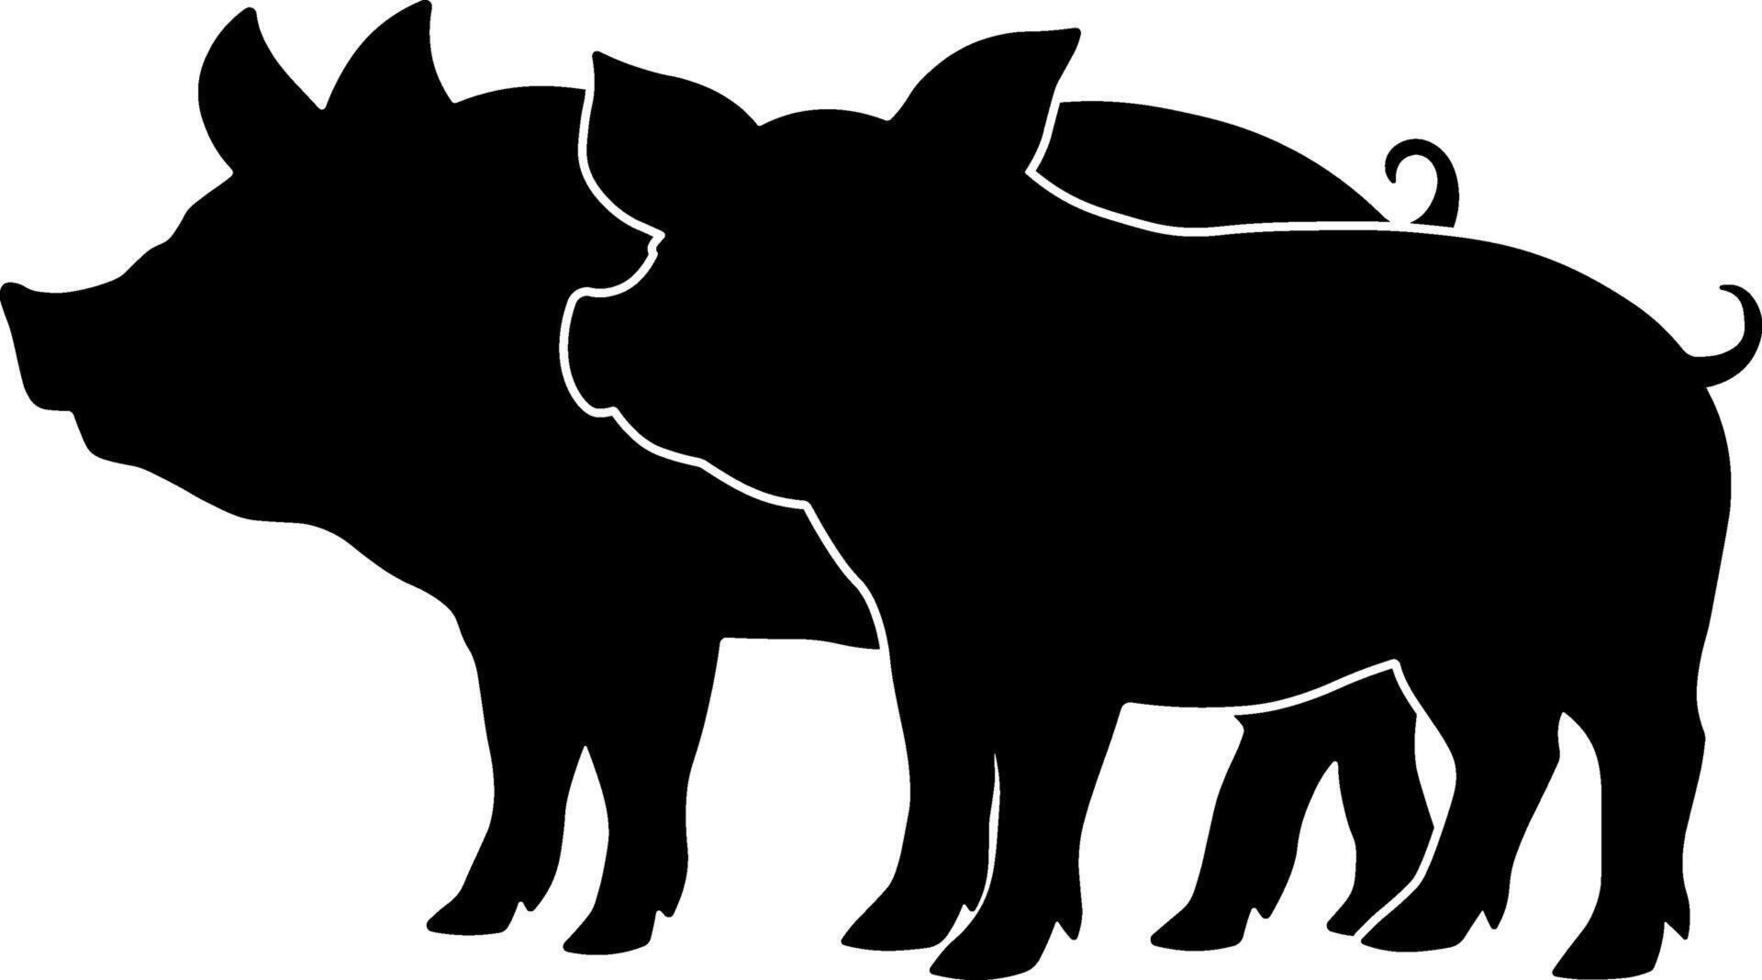 svart silhuett av en gris och smågris utan bakgrund vektor